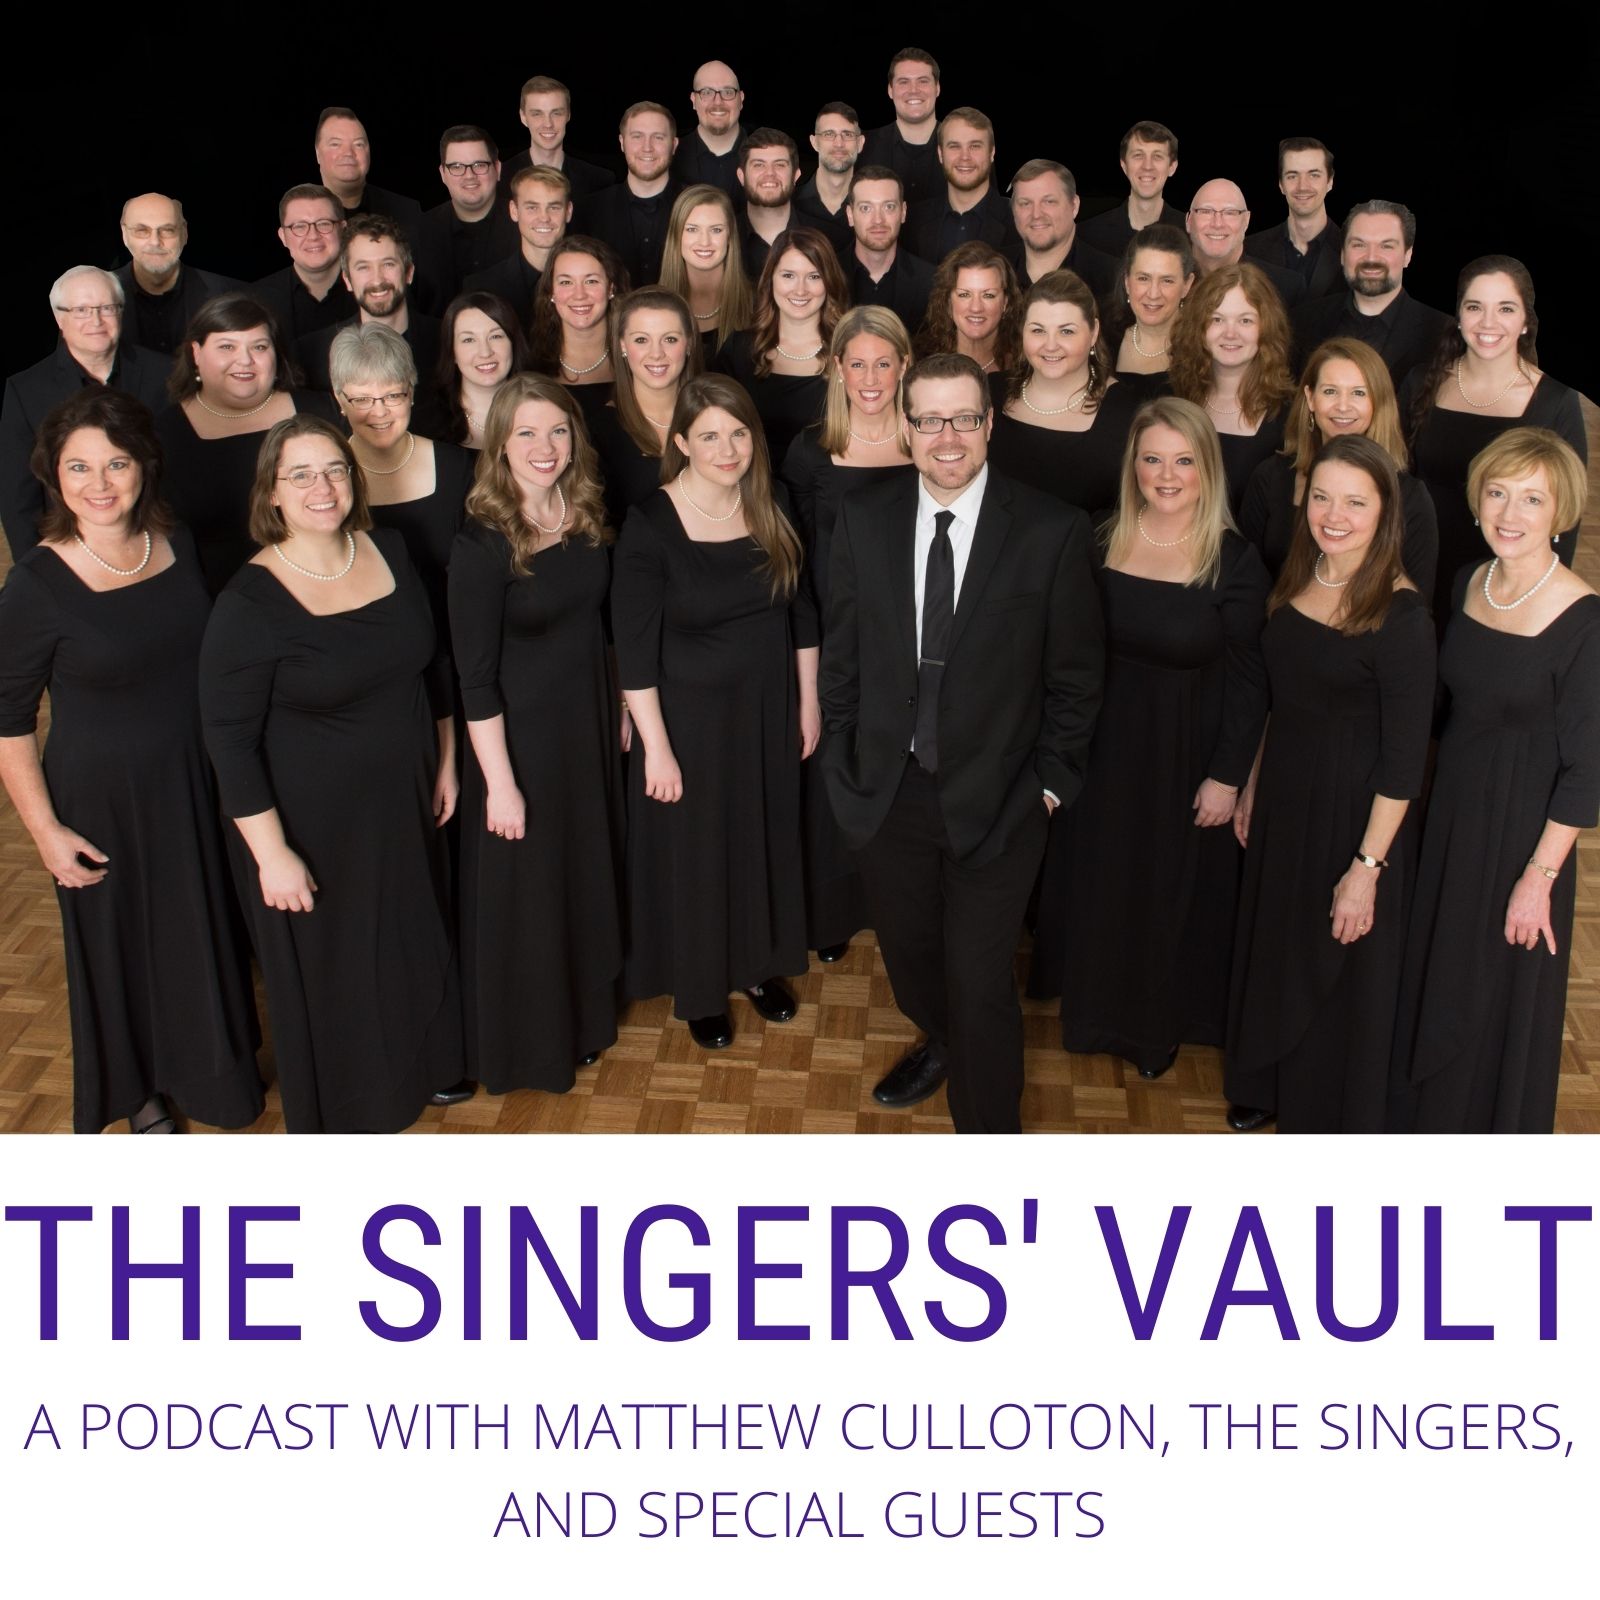 THE SINGERS' VAULT: Episode 1.4